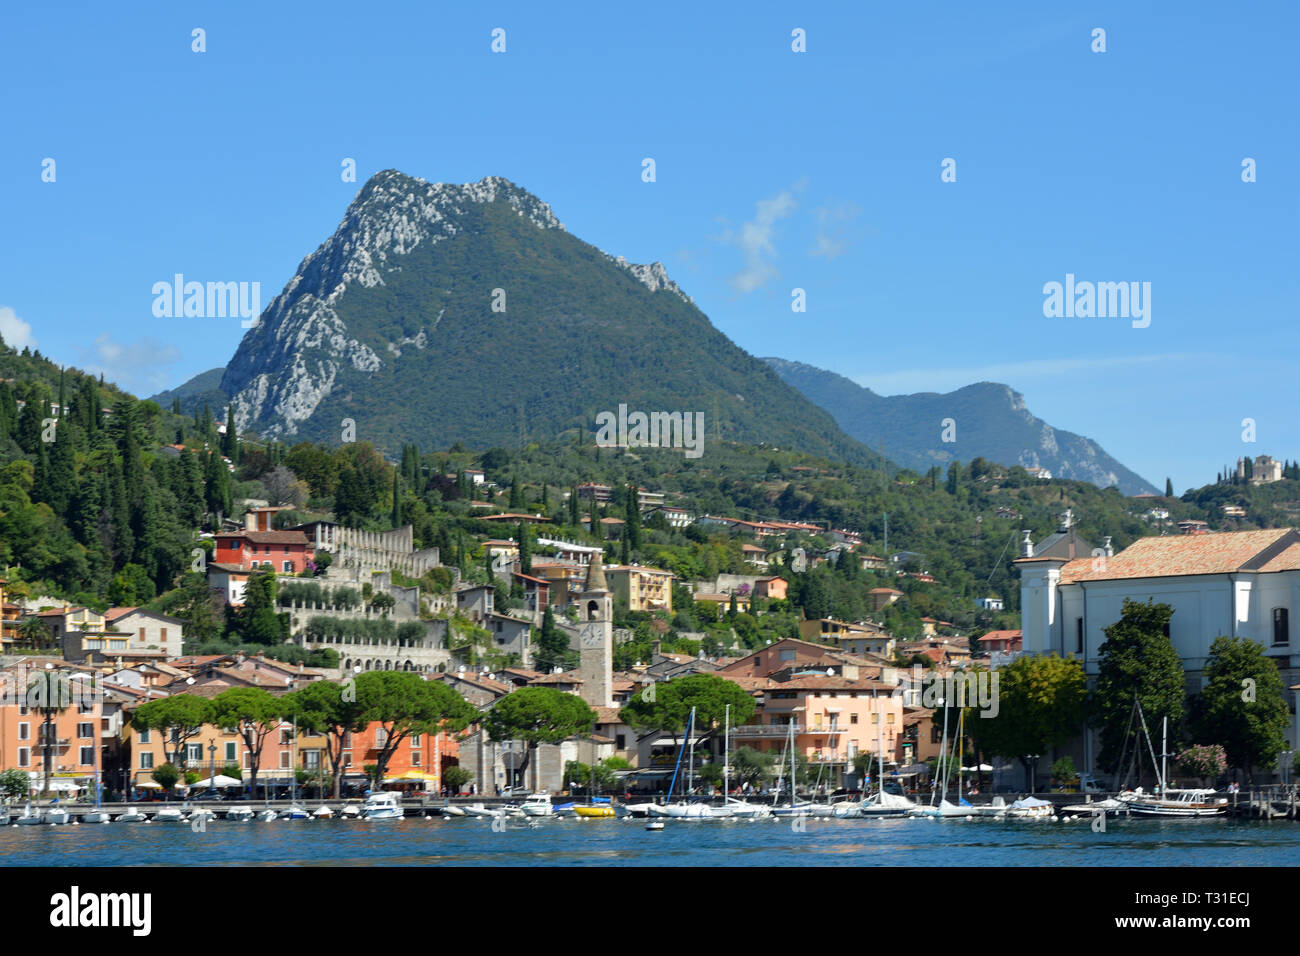 Maderno on the banks of Lake Garda - Italy. Stock Photo